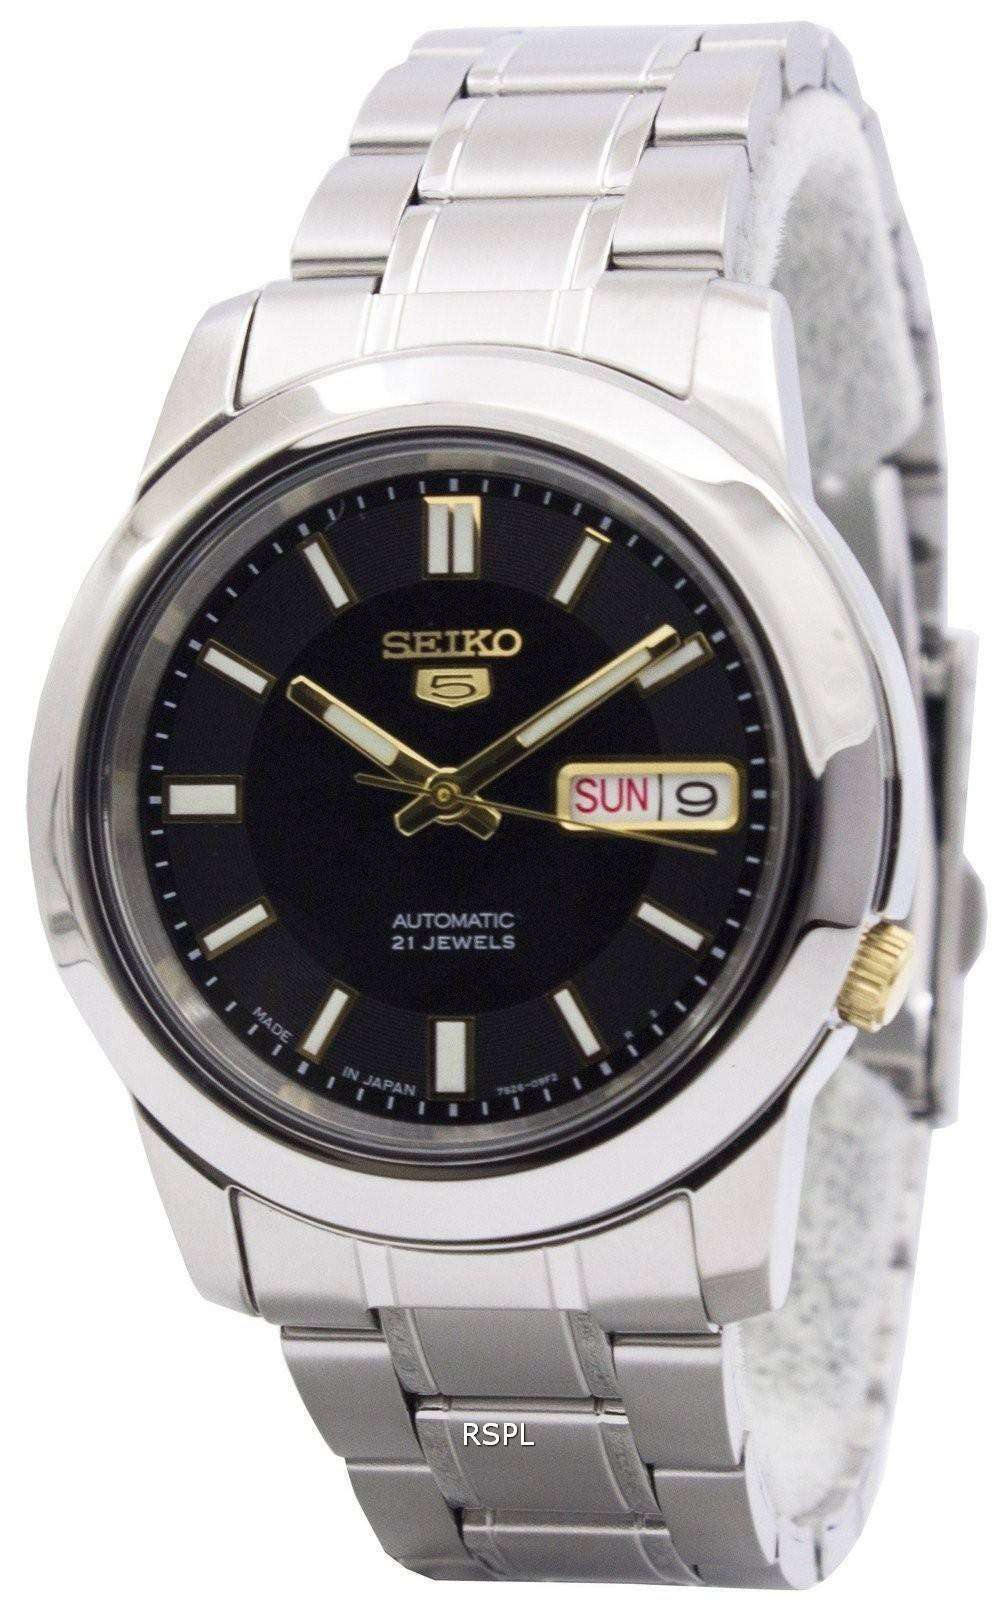 セイコー SEIKO 5 Automatic 21Jewels 腕時計